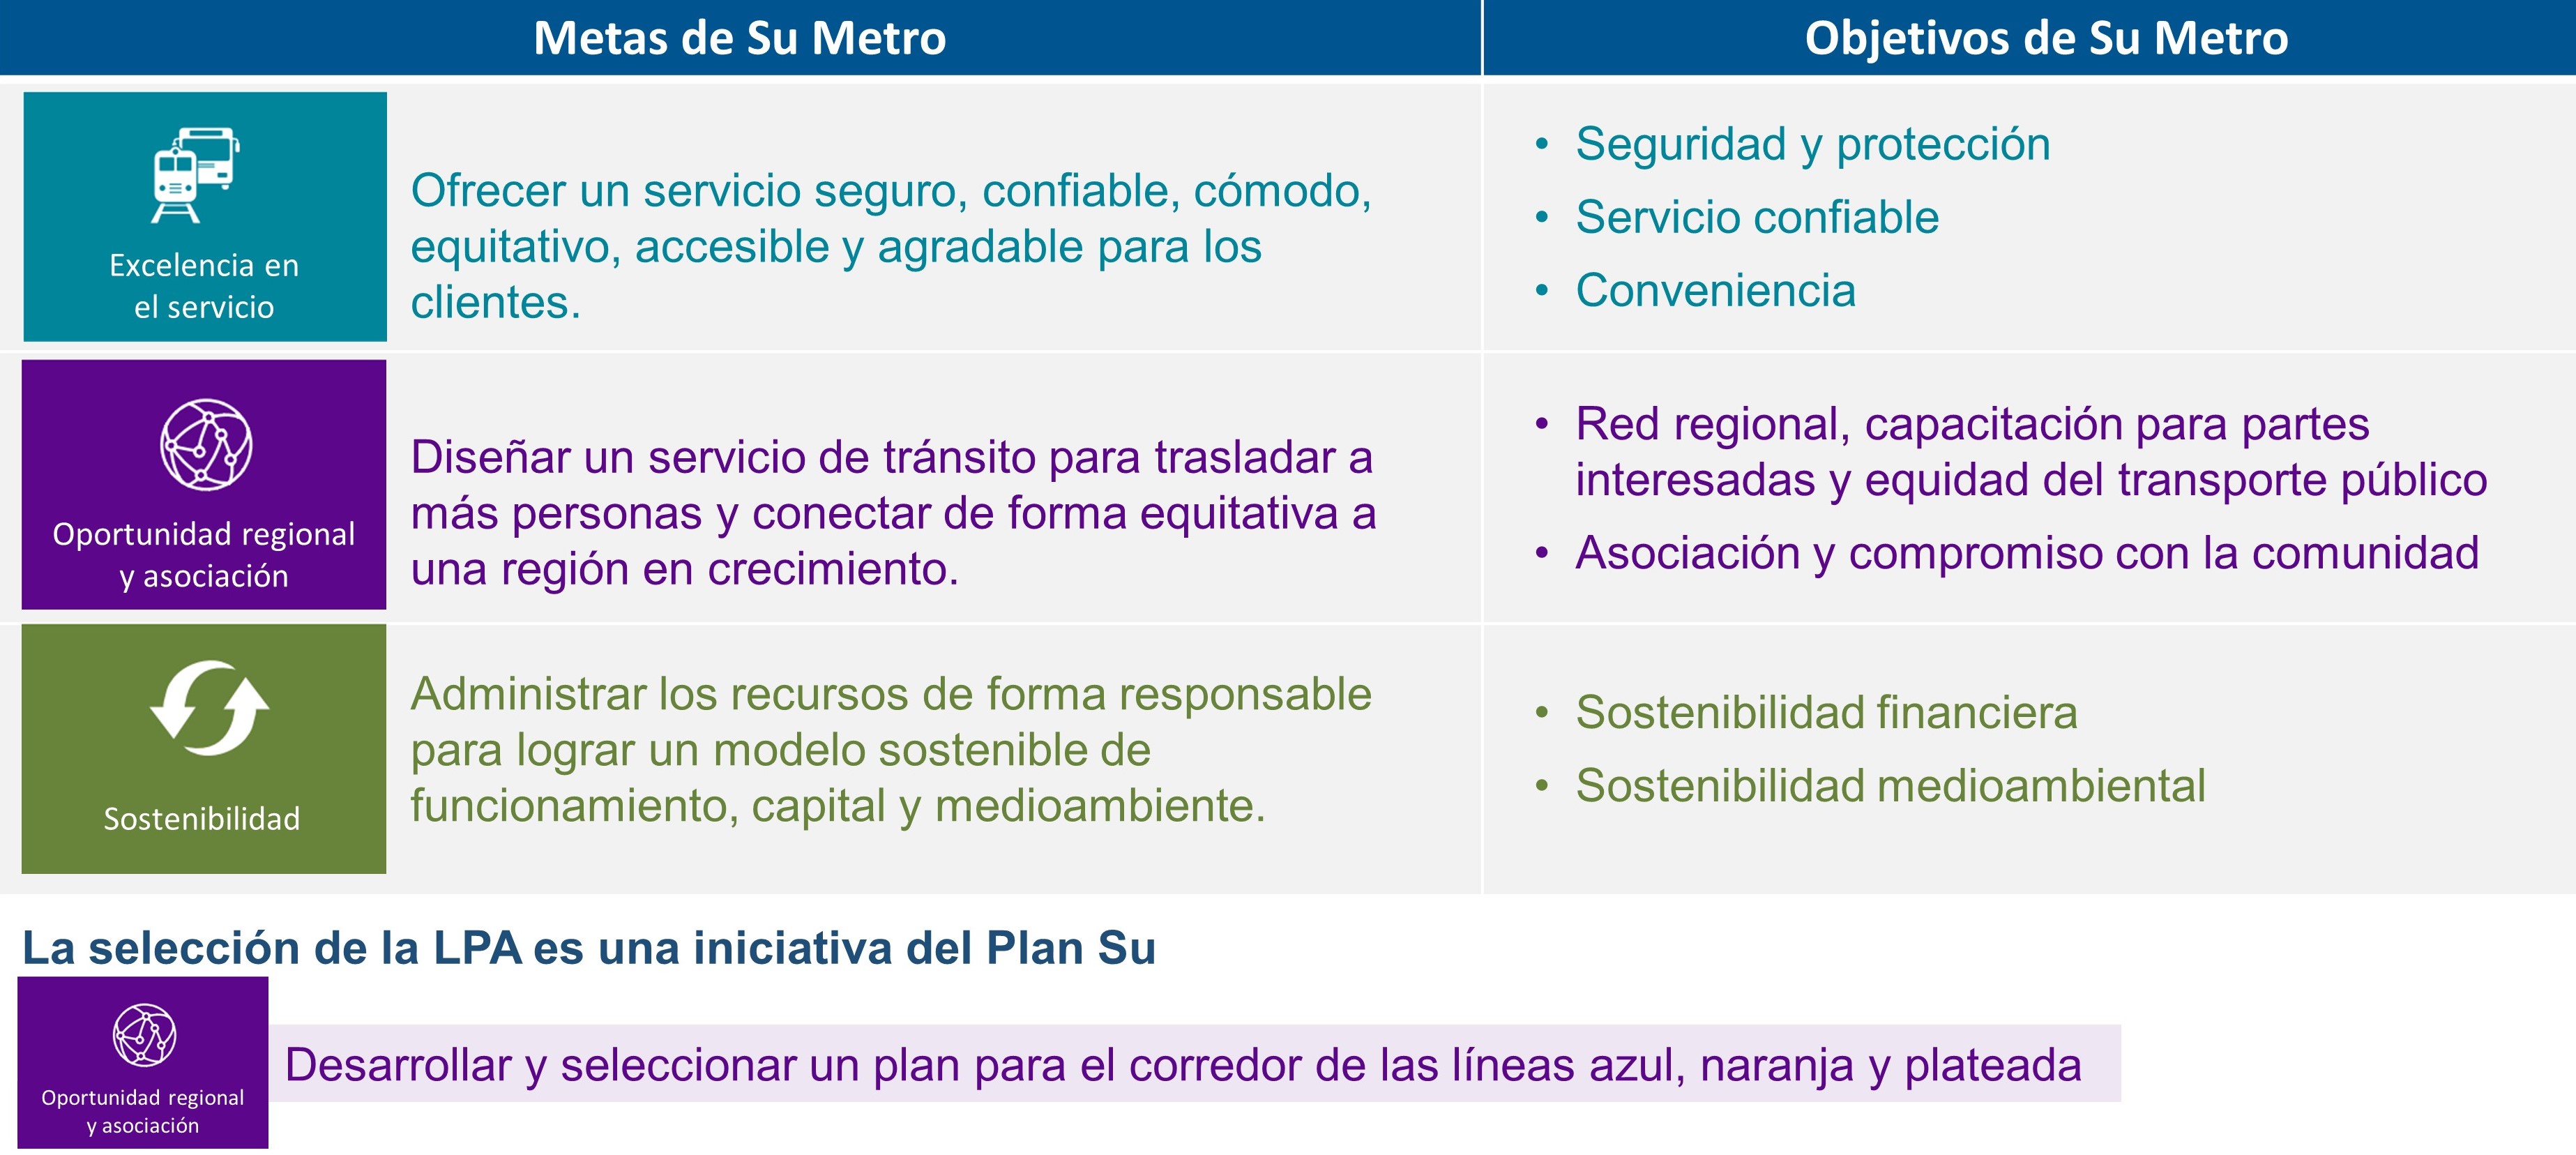 Imagen que muestra las metas y objetivos de Su Metro. Excelencia en el servicio, oportunidades y asociaciones regionales y sostenibilidad.